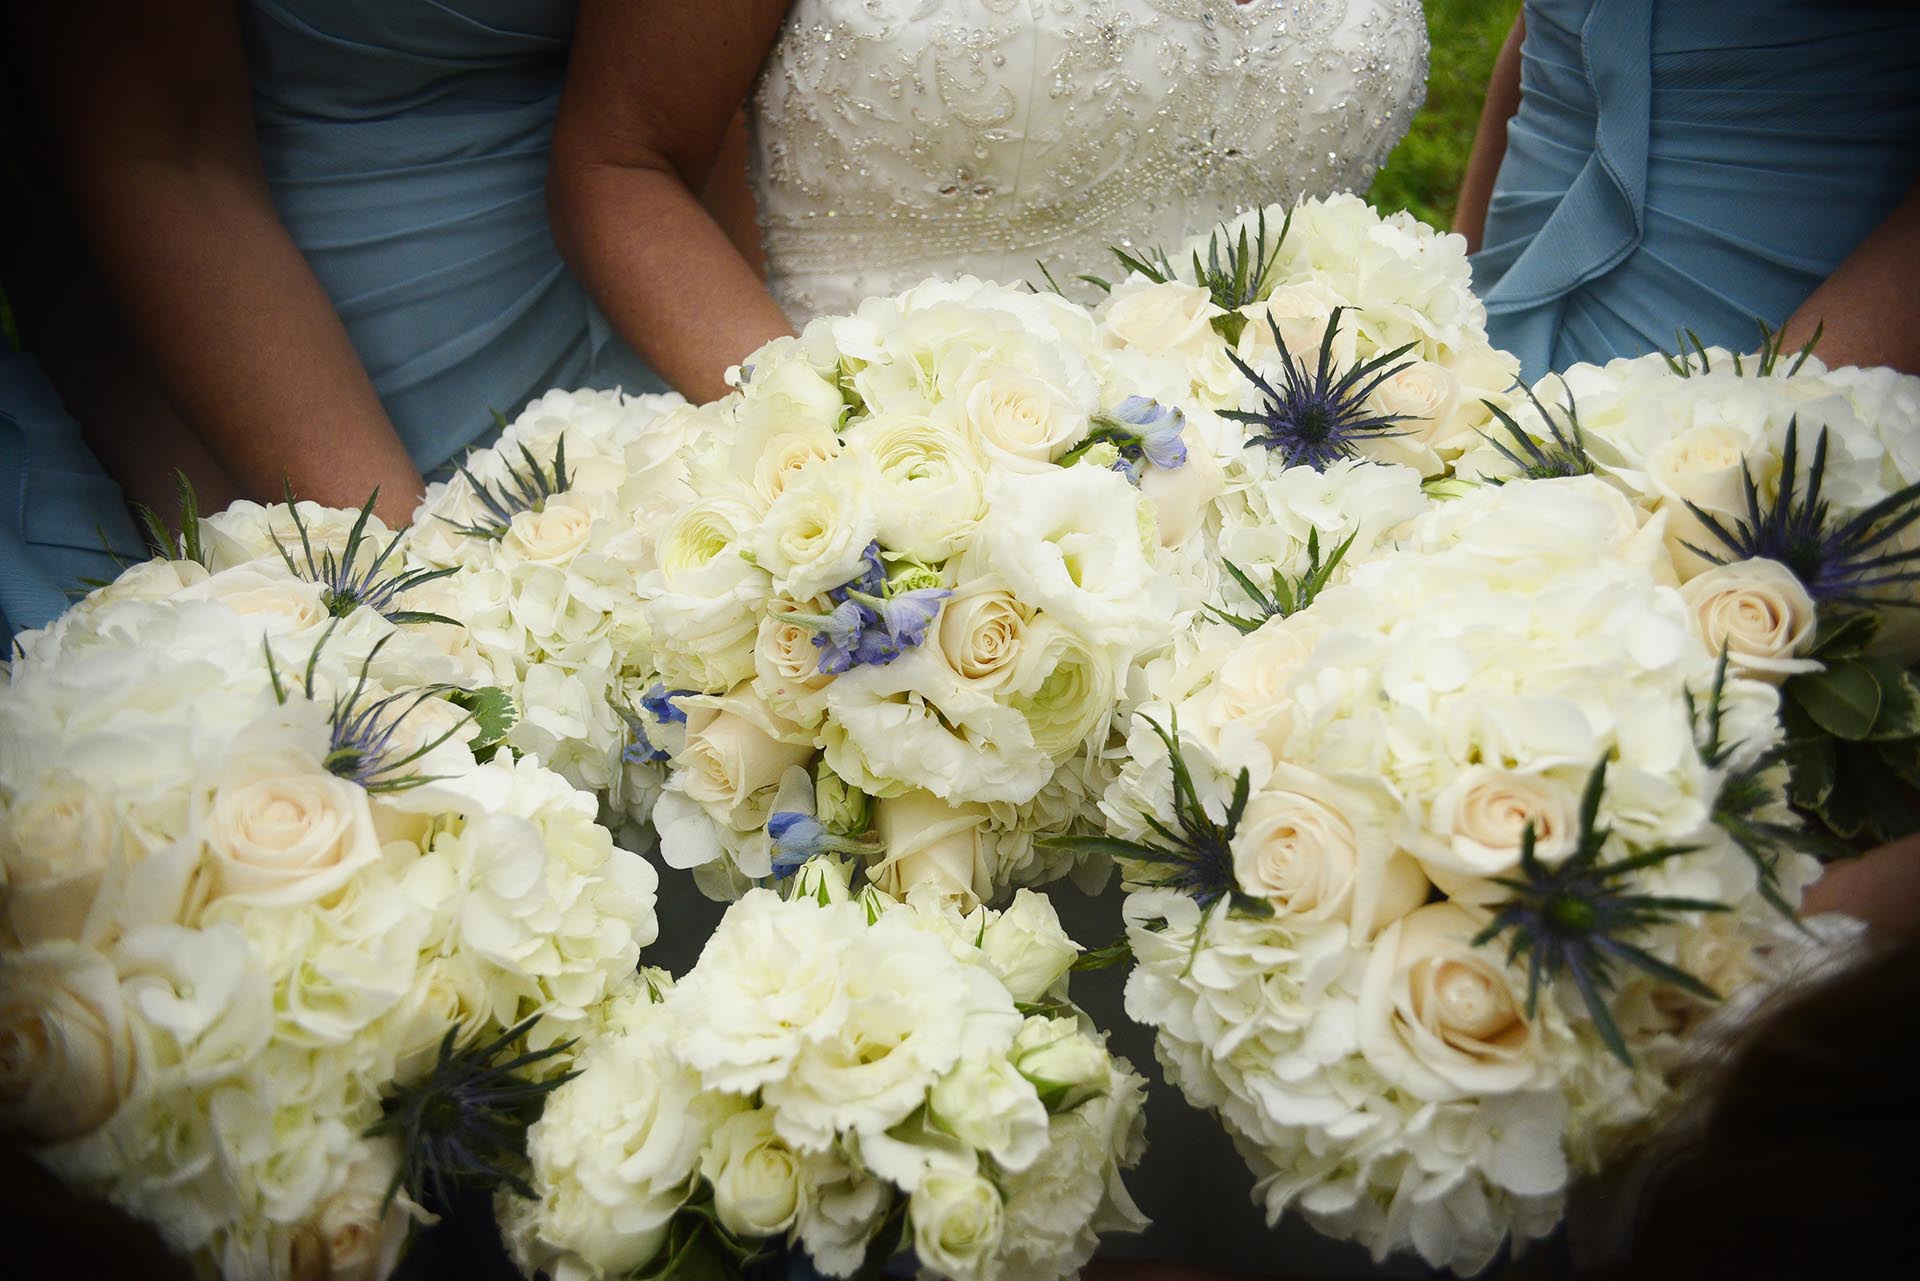 Flower arrangement at wedding